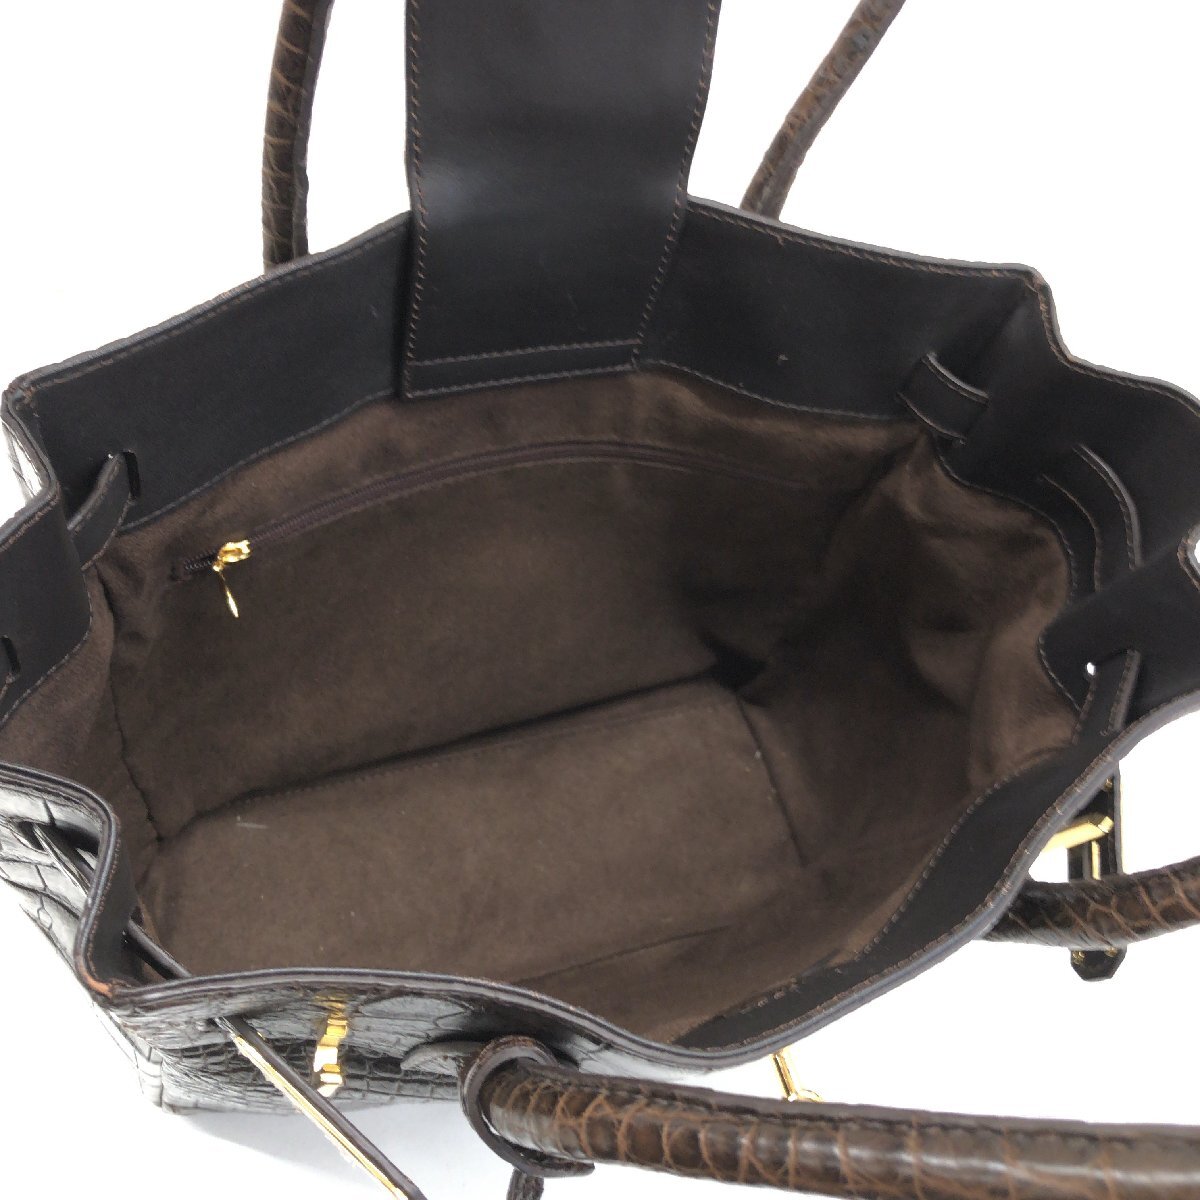 ◆新品 Real Leather Bag クロコ型押し 本革 レザー ハンドバッグ ダークブラウン レザーバッグ 手提げ カデナ レディース 女性用 婦人の画像5